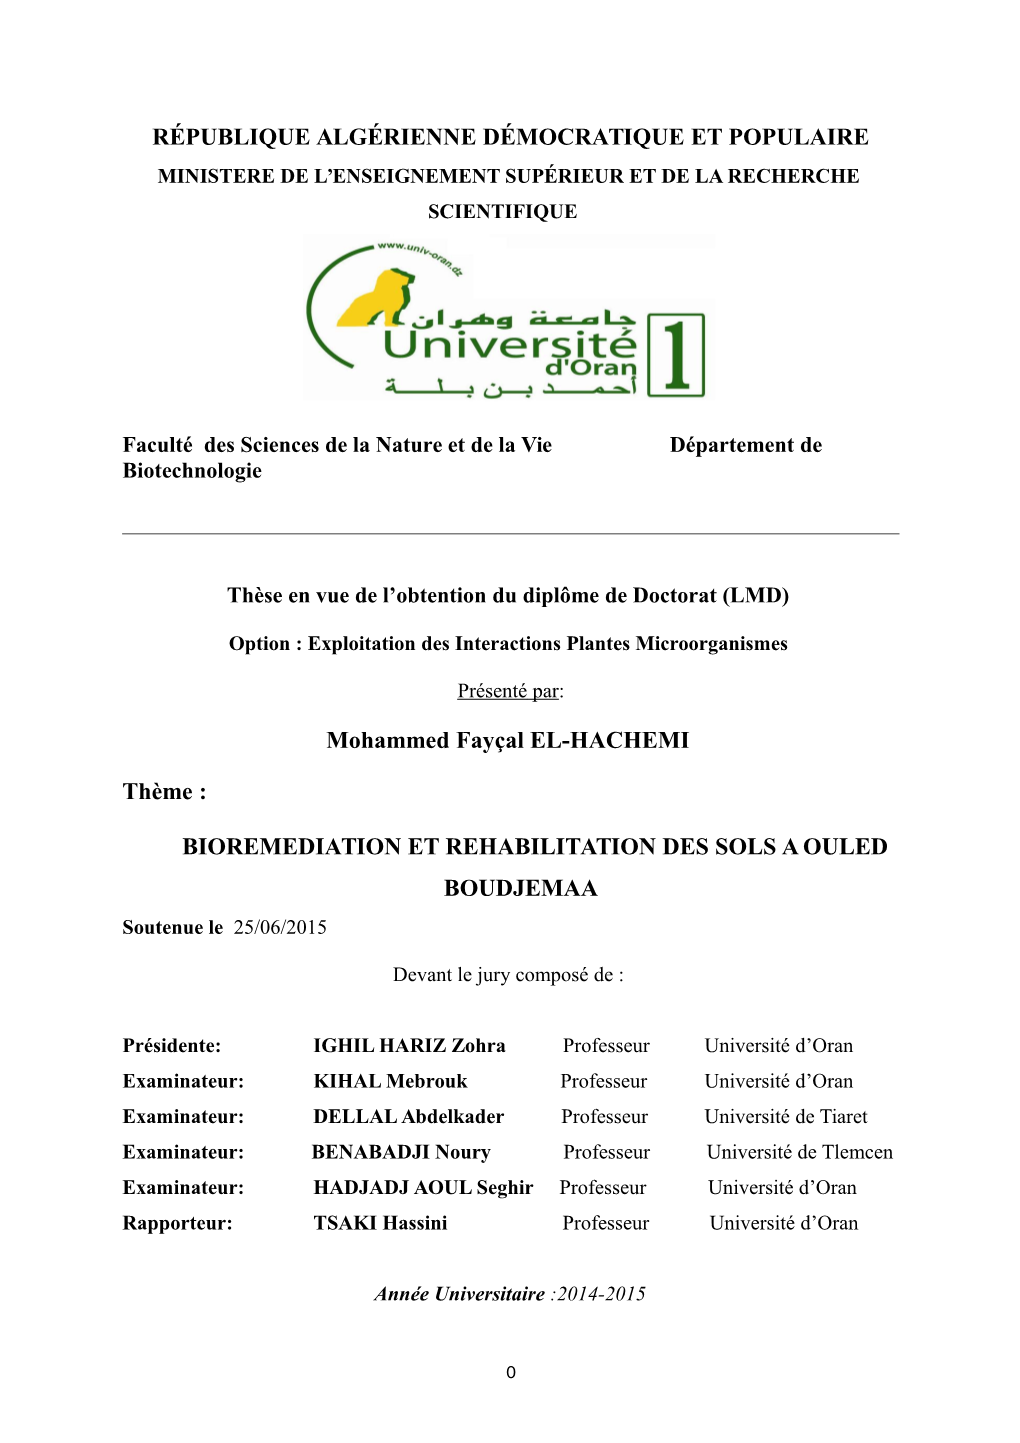 BIOREMEDIATION ET REHABILITATION DES SOLS a OULED BOUDJEMAA Soutenue Le 25/06/2015